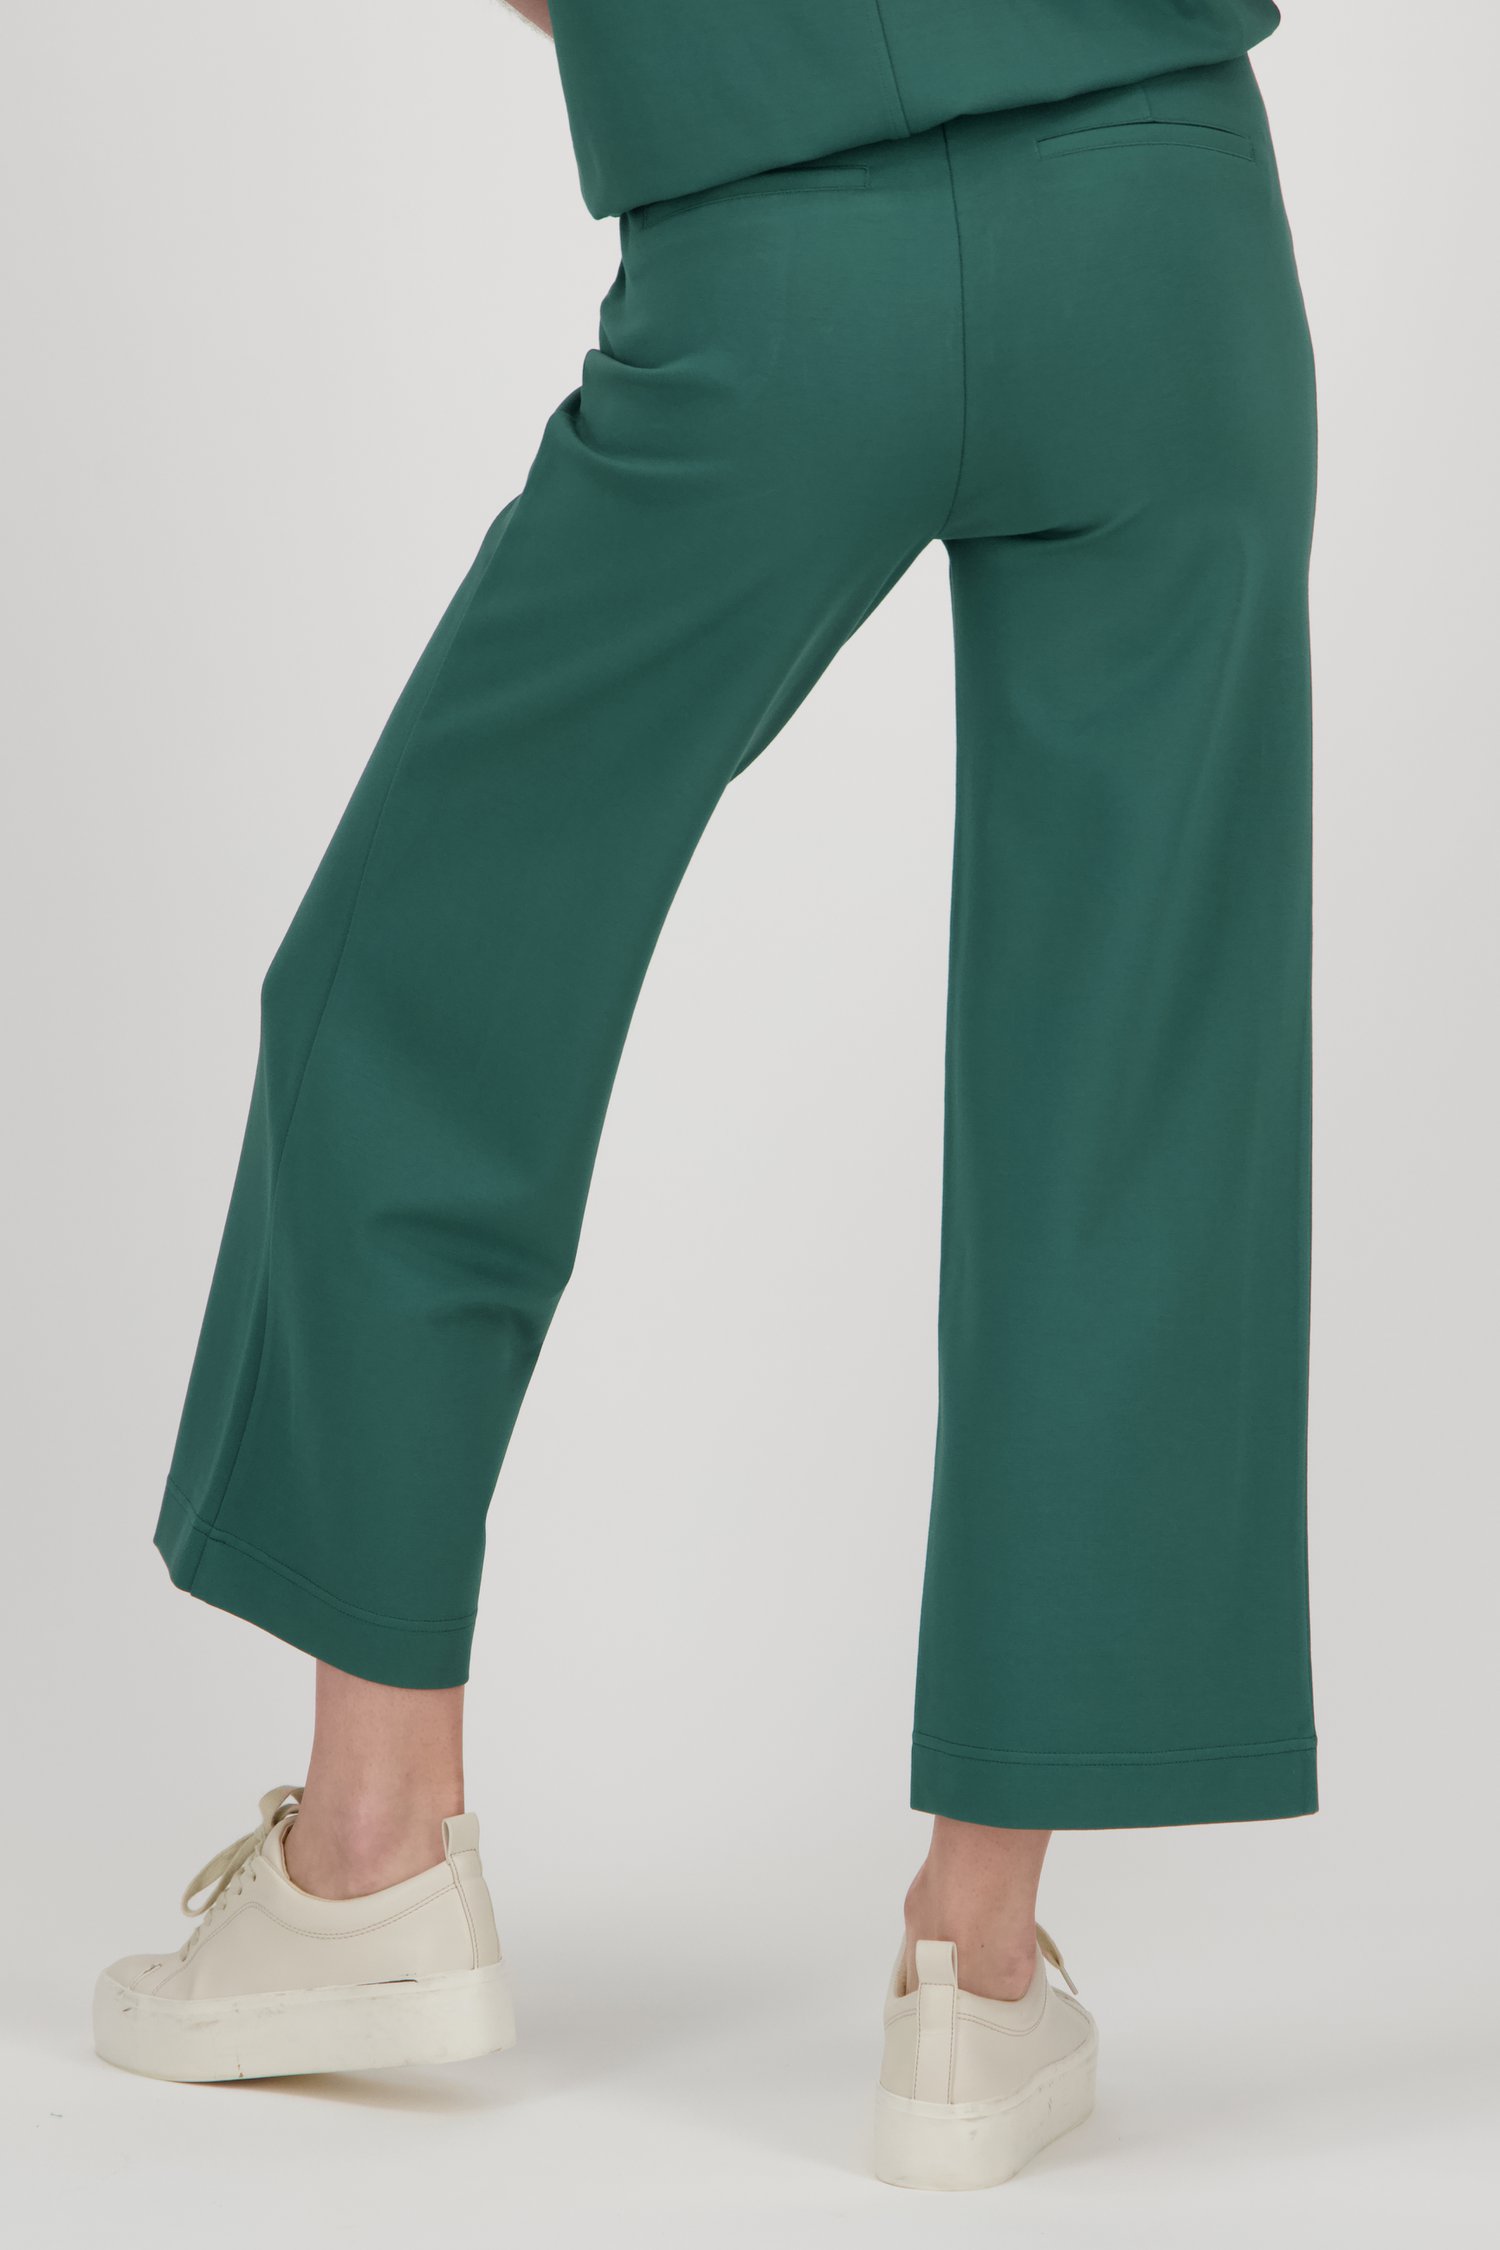 Pantalon large bleu-vert - longueur 7/8  de Libelle pour Femmes